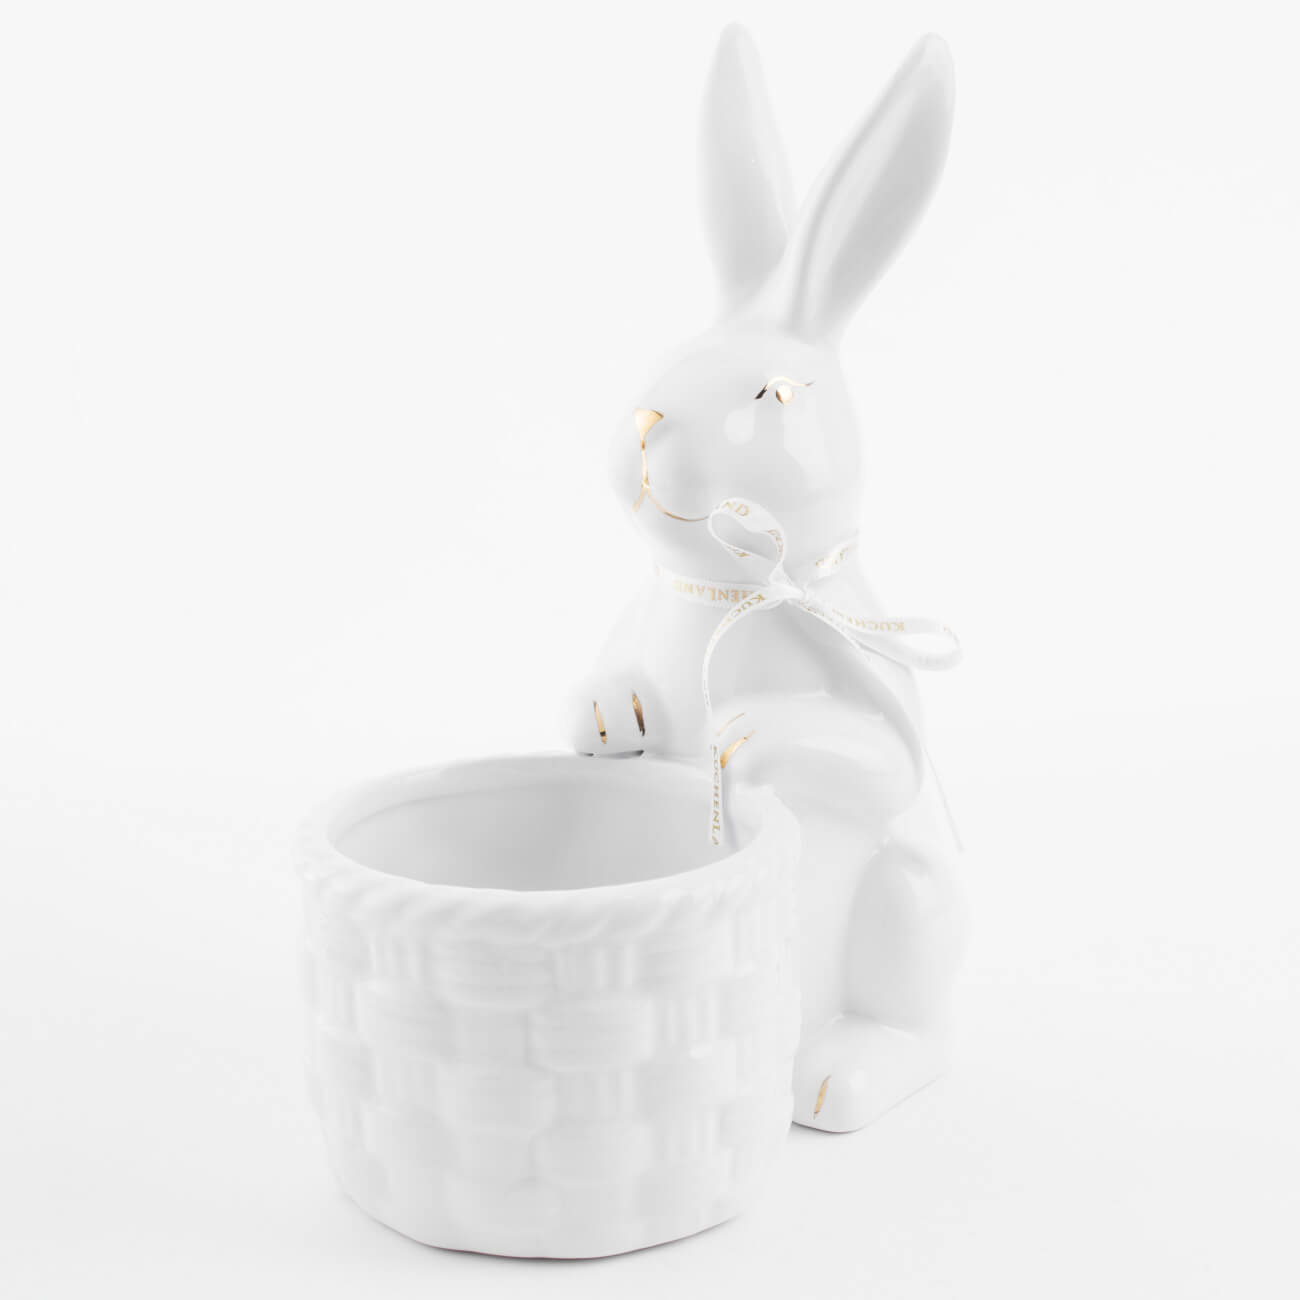 Конфетница, 18x23 см, керамика, бело-золотистая, Кролик с плетенной корзиной, Easter gold